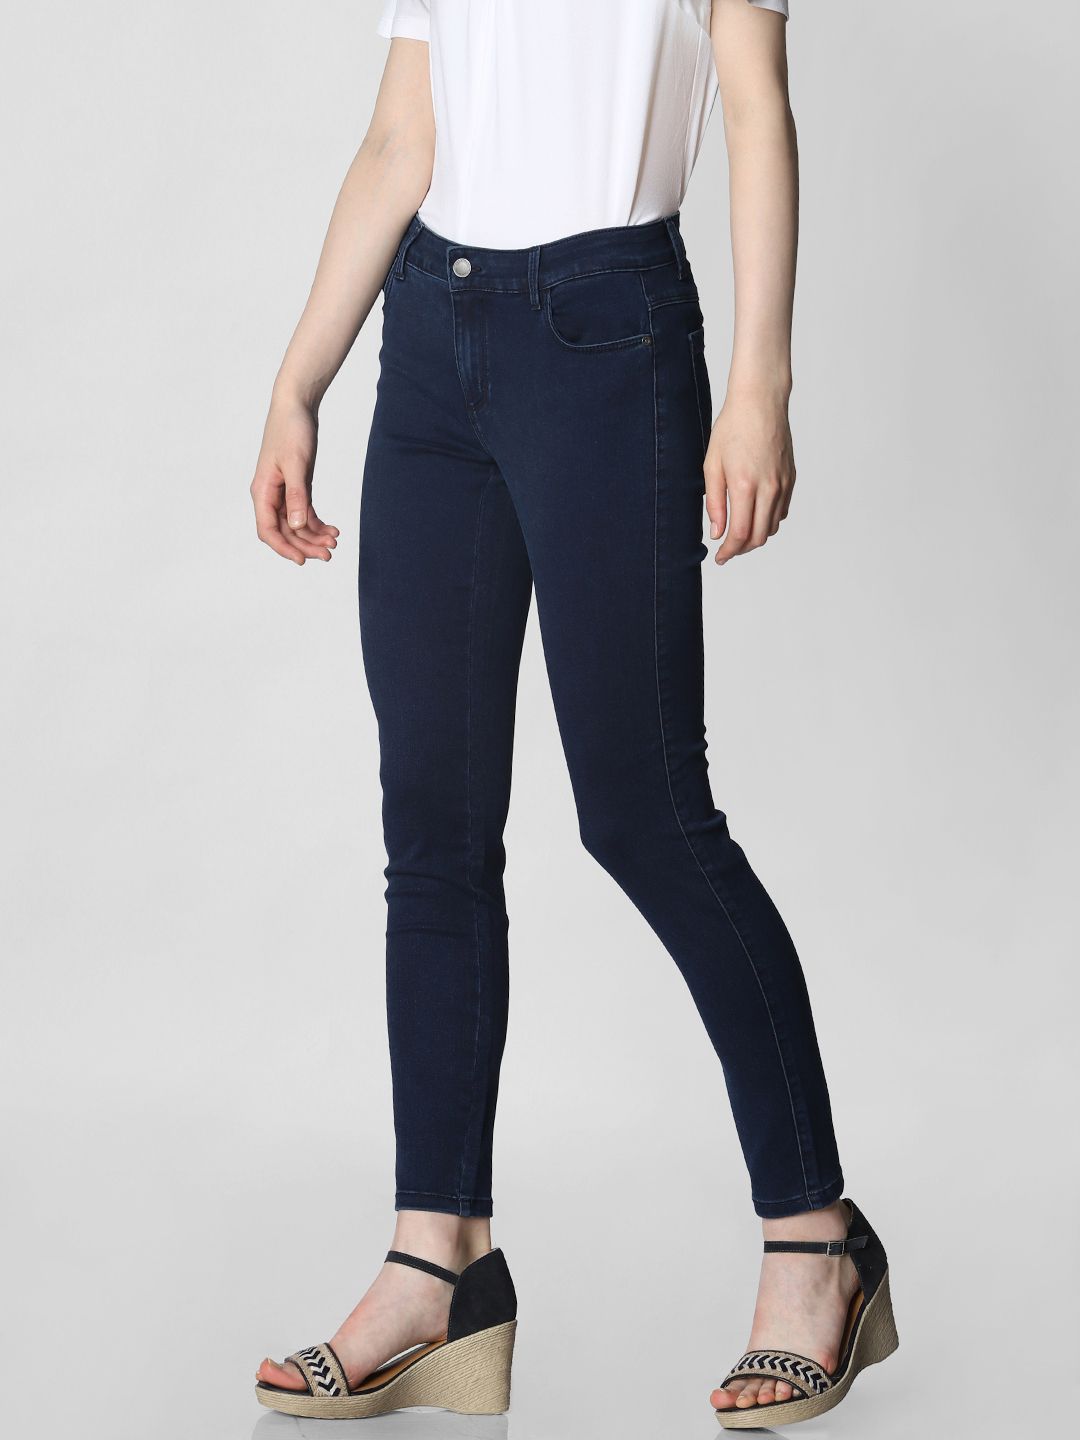 Vero Moda Women Solid Casual Wear Jeans